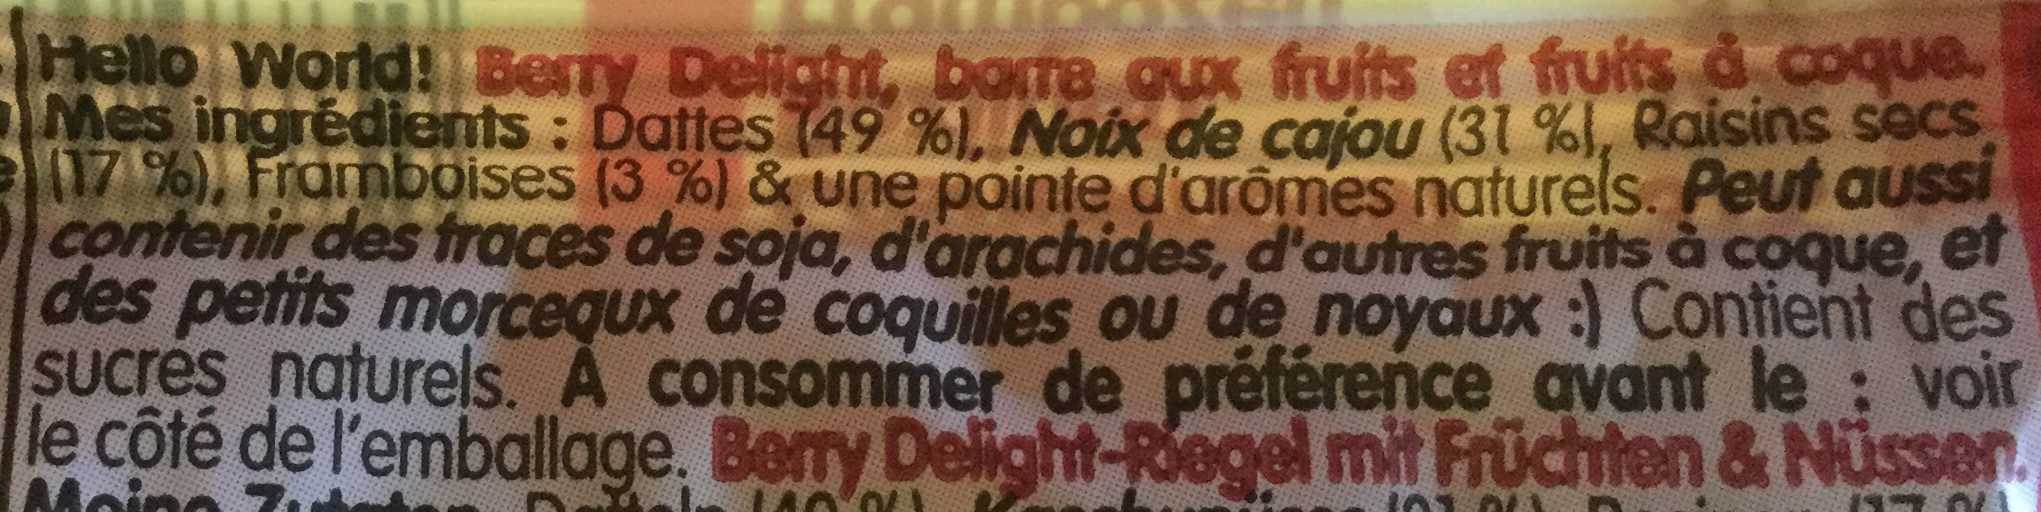 NAKD Framboises - 35g (1p) - Ingredients - fr